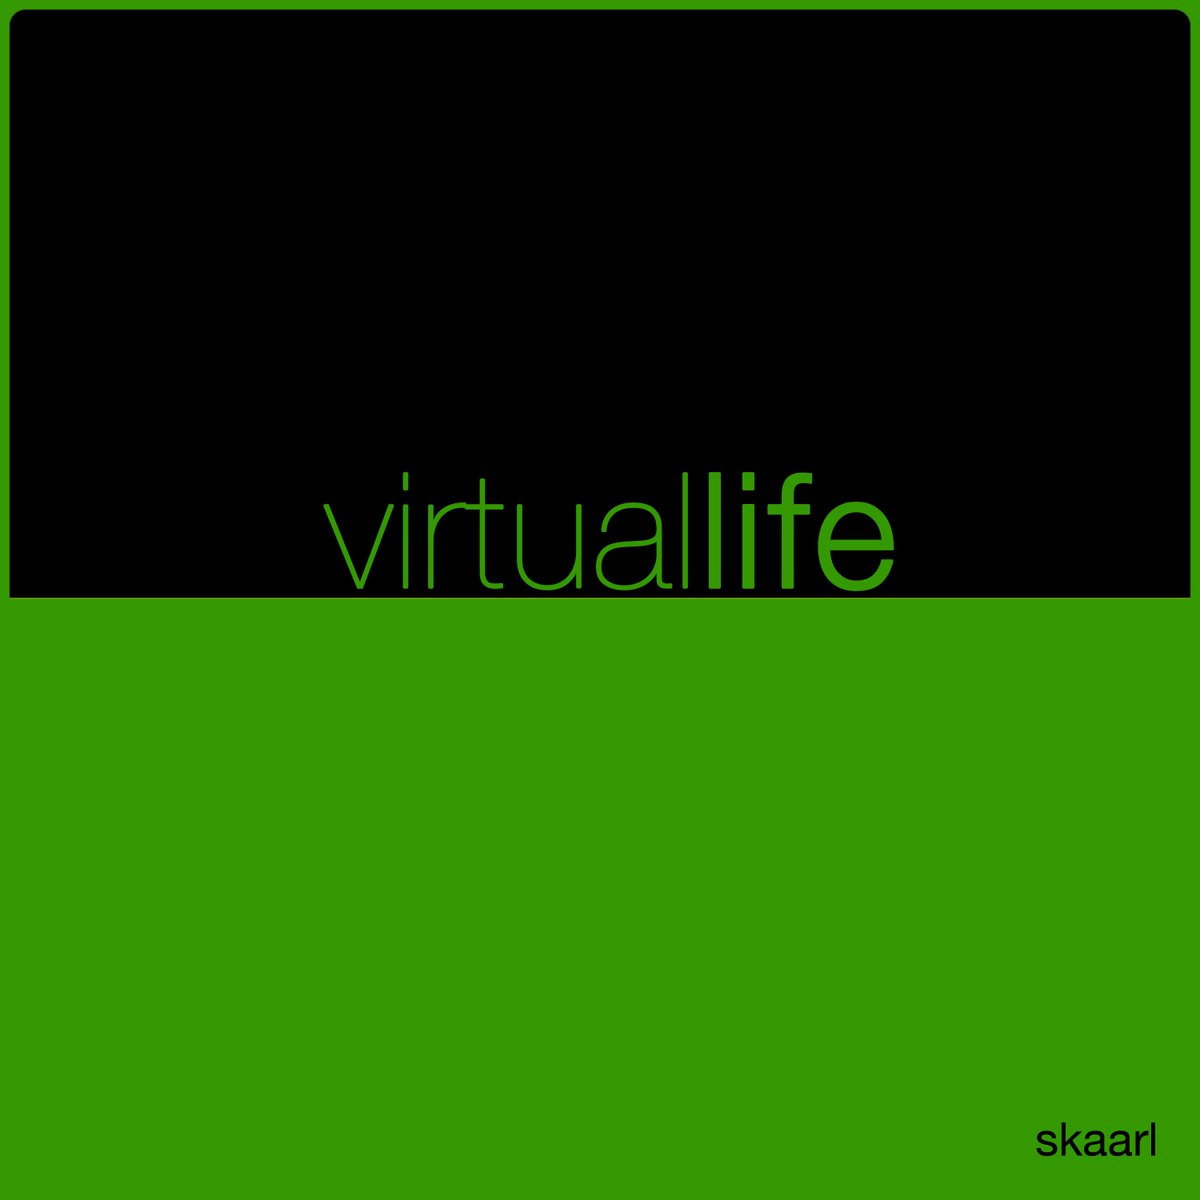 Virtual Life by Skaarl